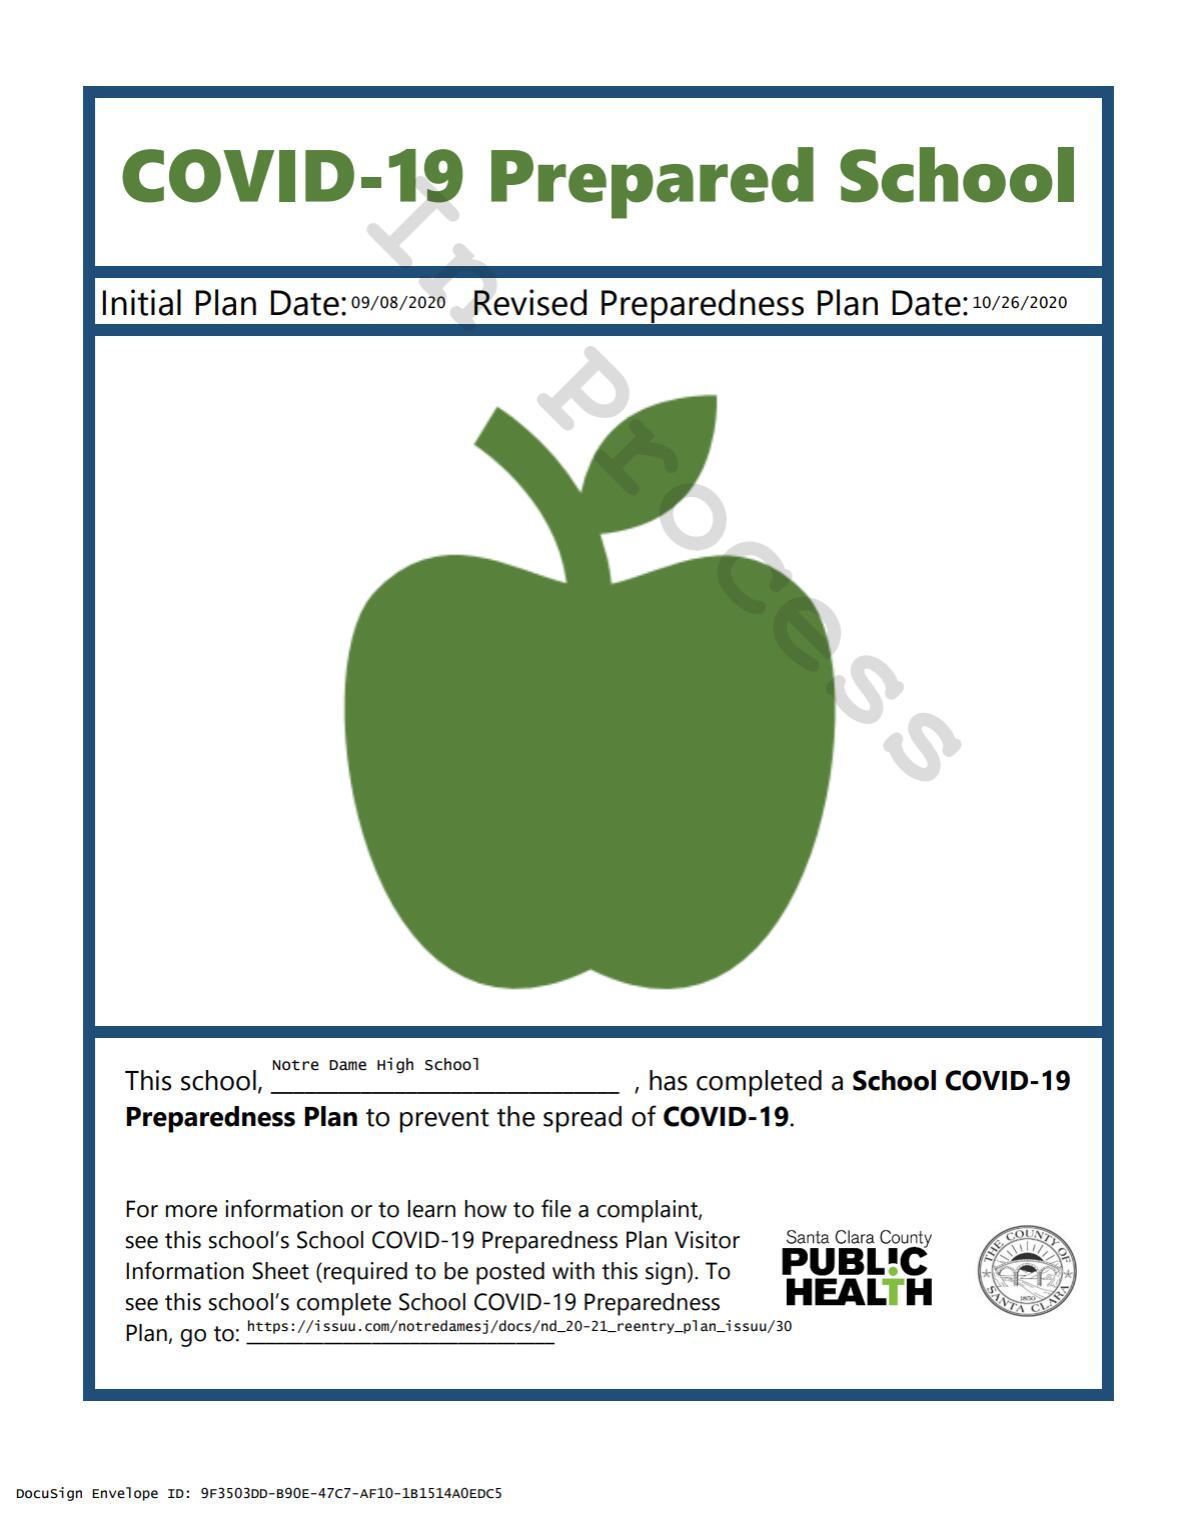 Covid-19 Prepared School